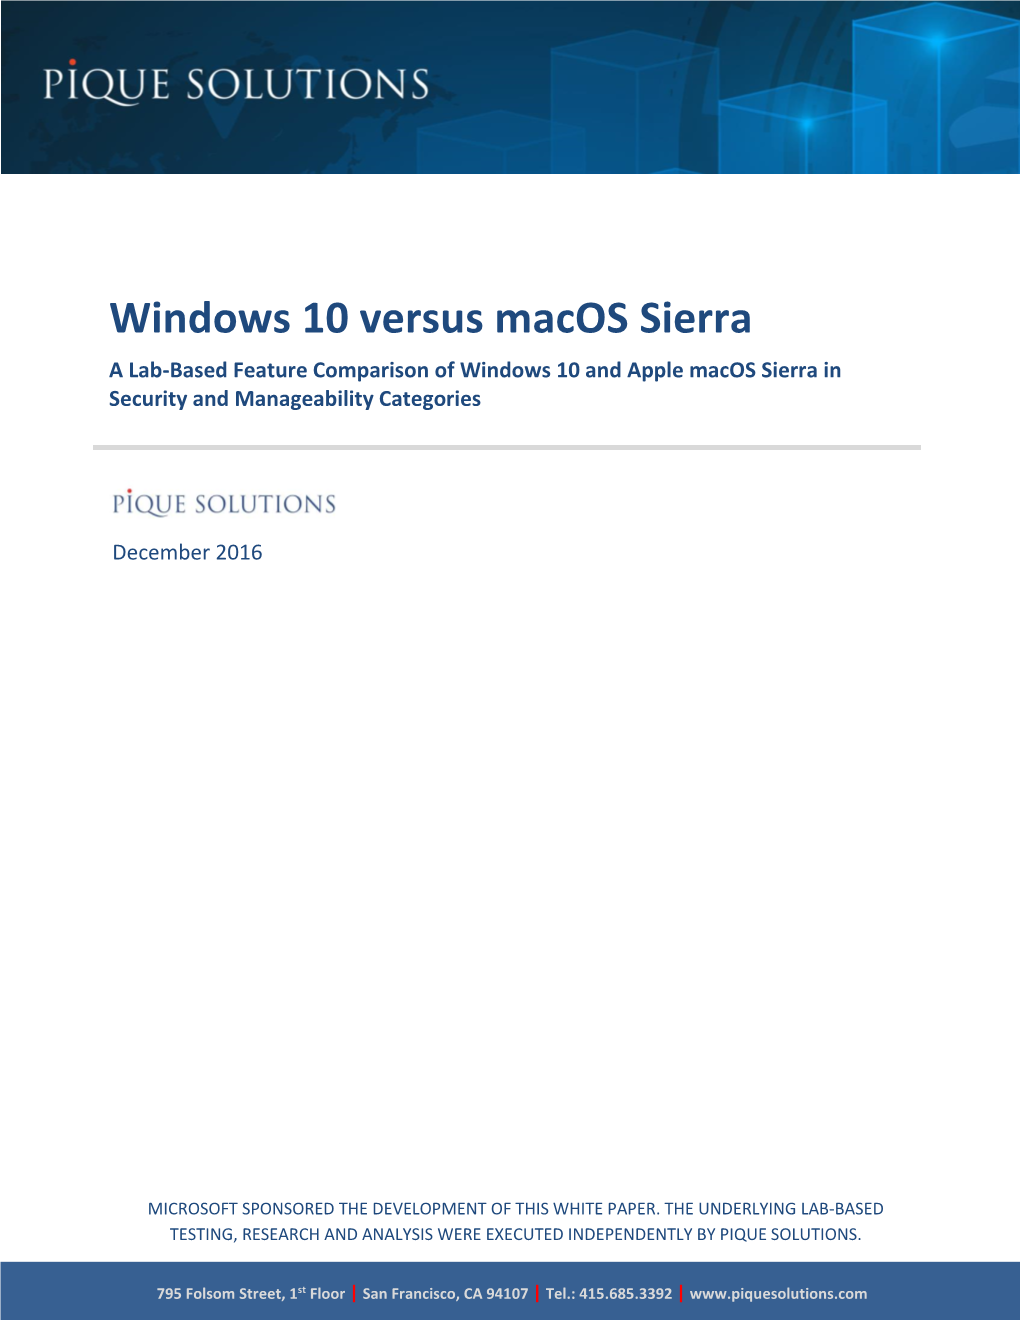 Windows 10 Vs. Macos Sierra White Paper